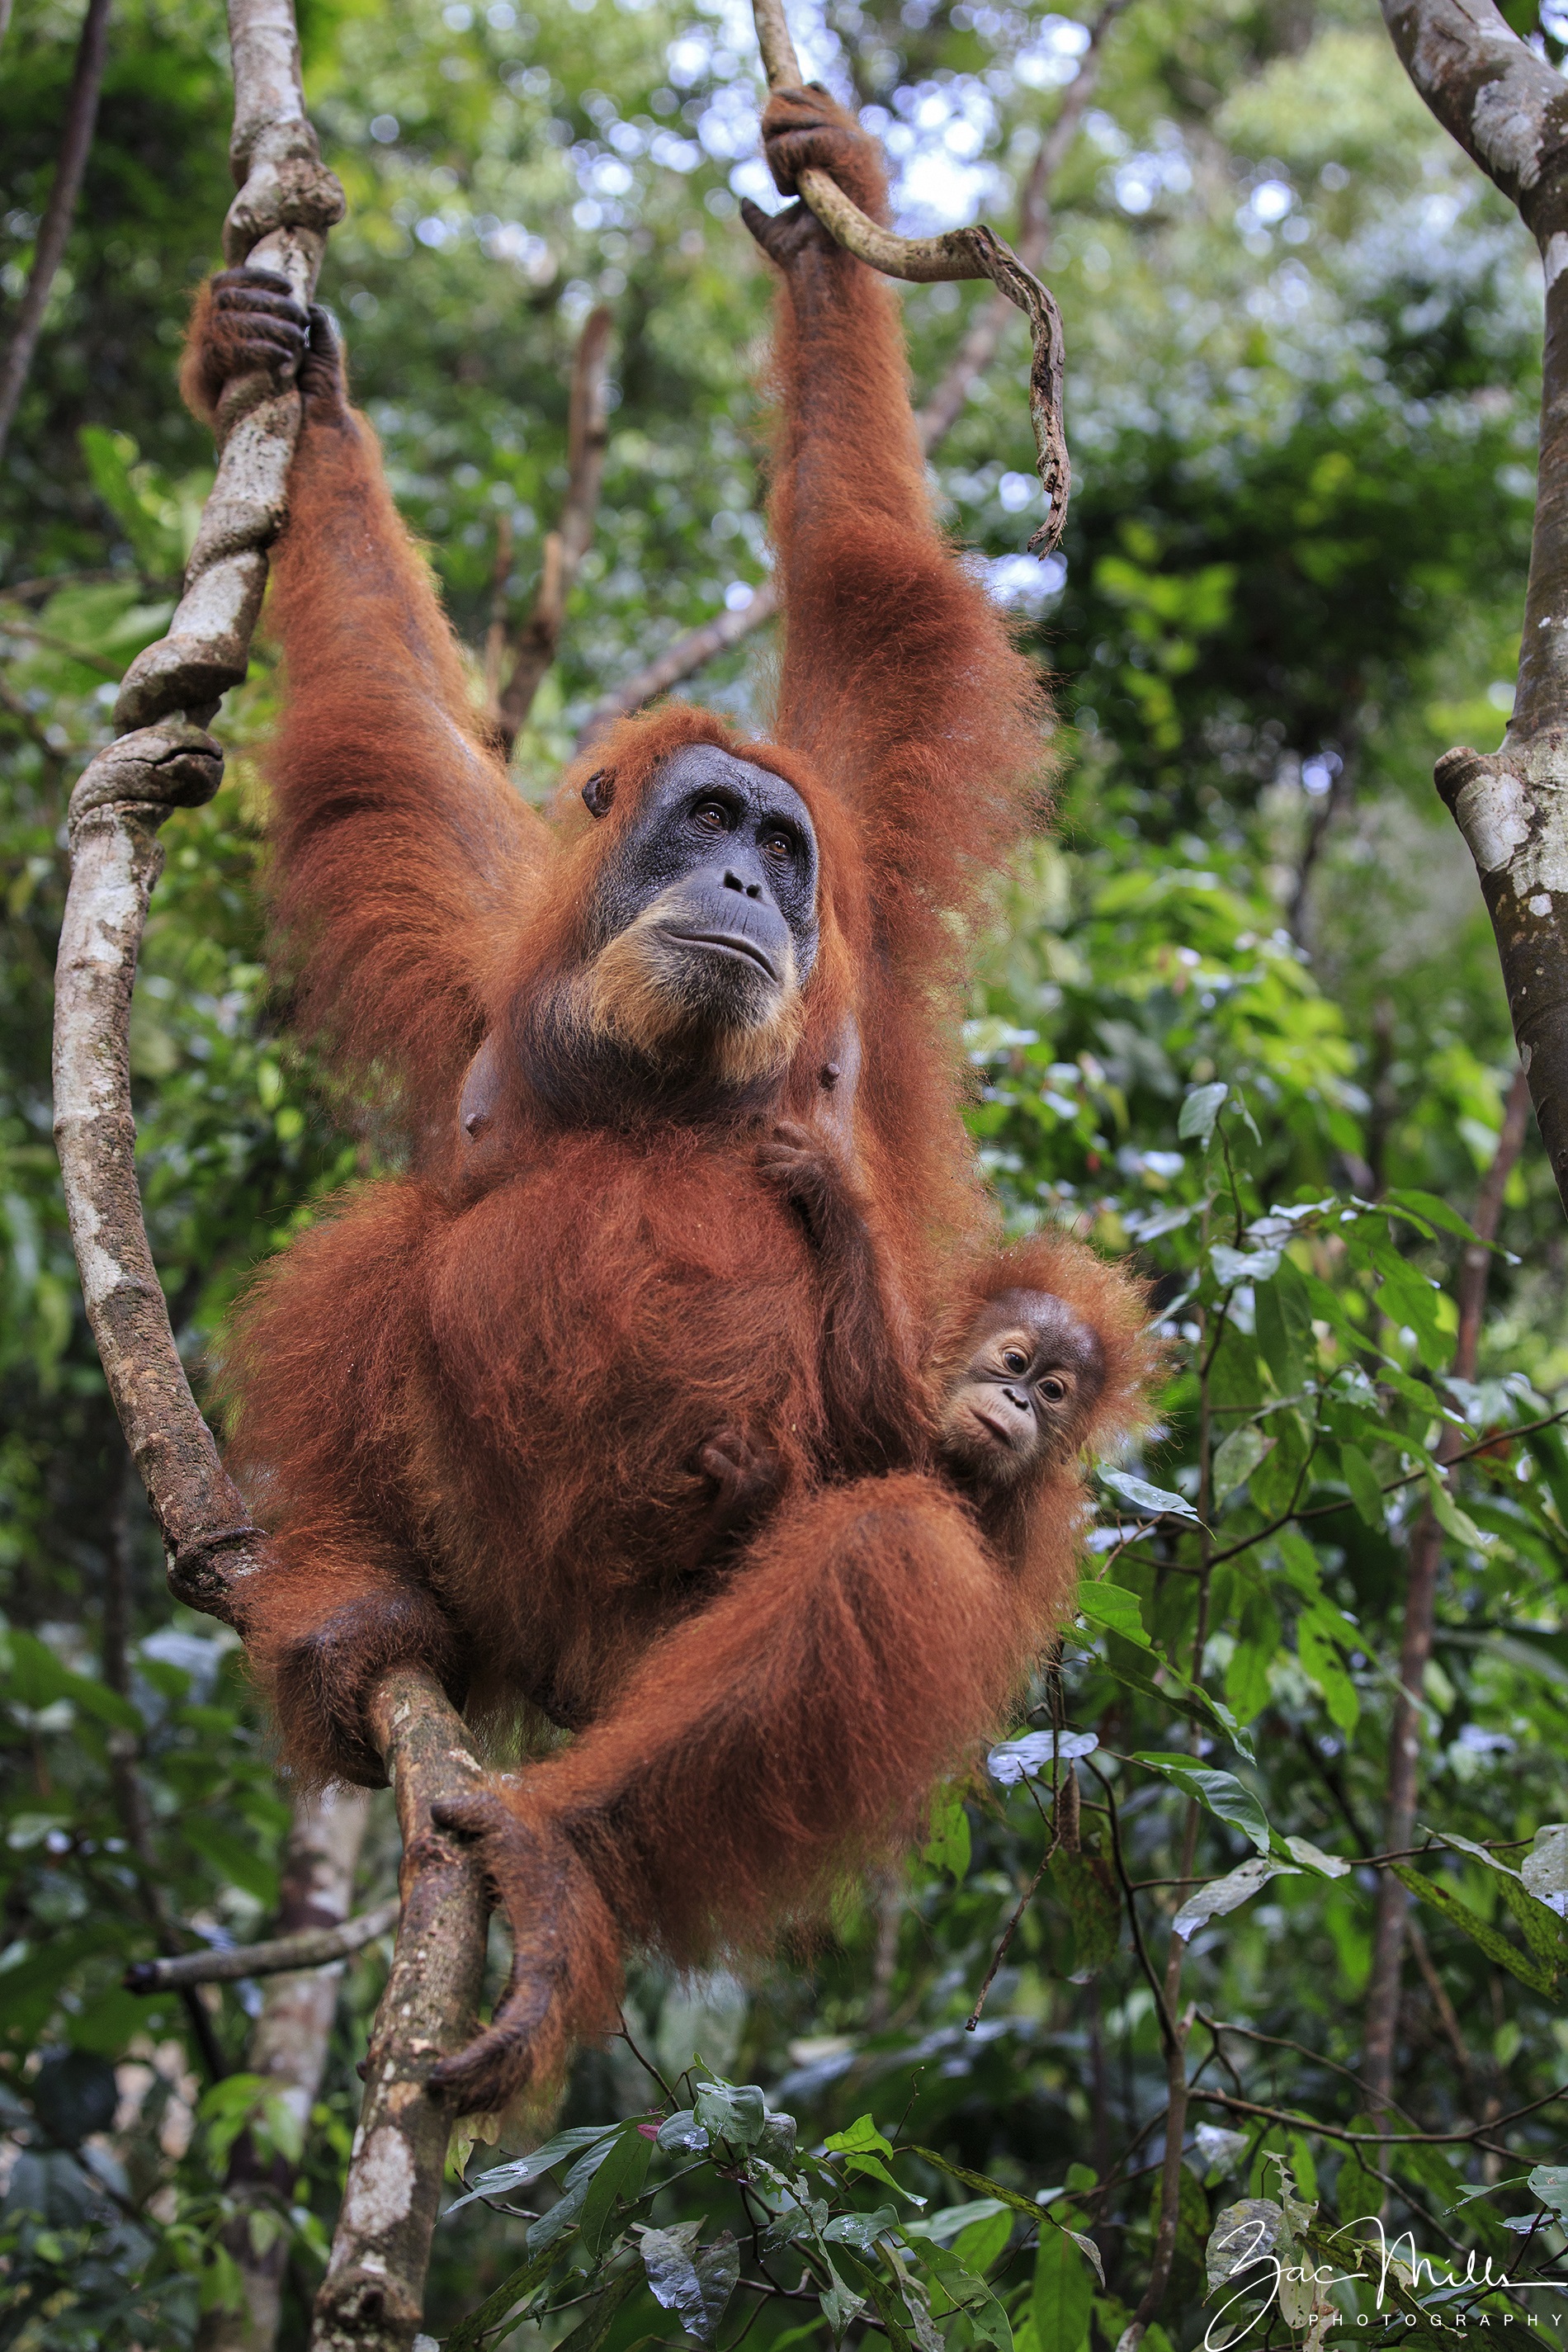 SOS – Sumatran Orangutan Society